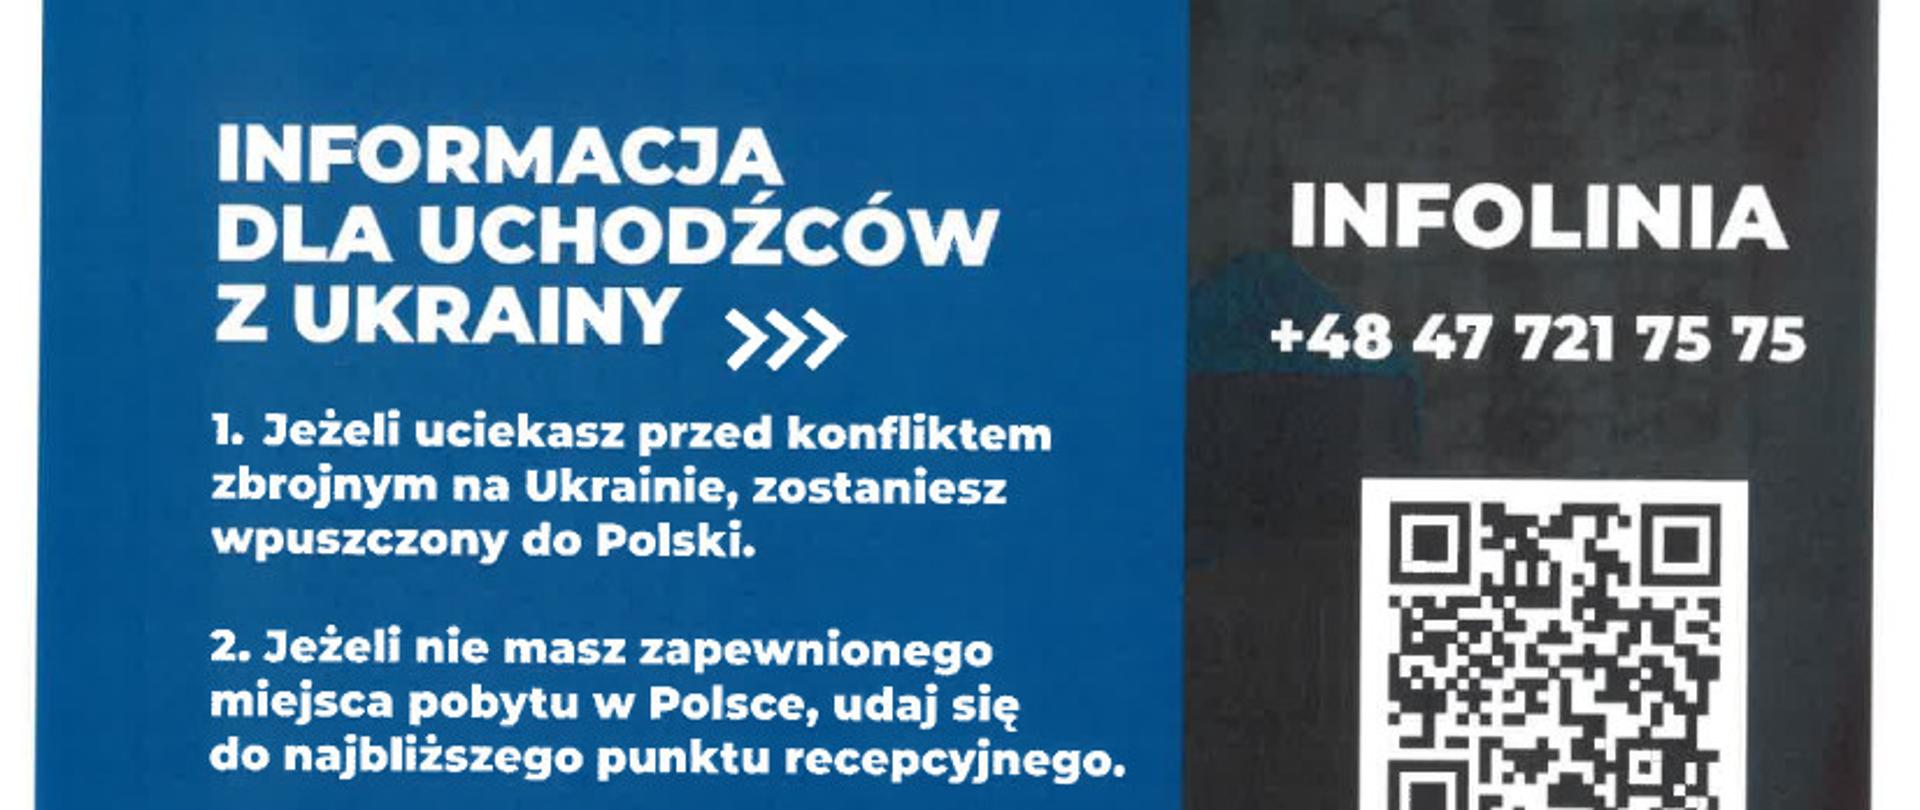 Informacja - Wjazd do Polski obywateli Ukrainy 